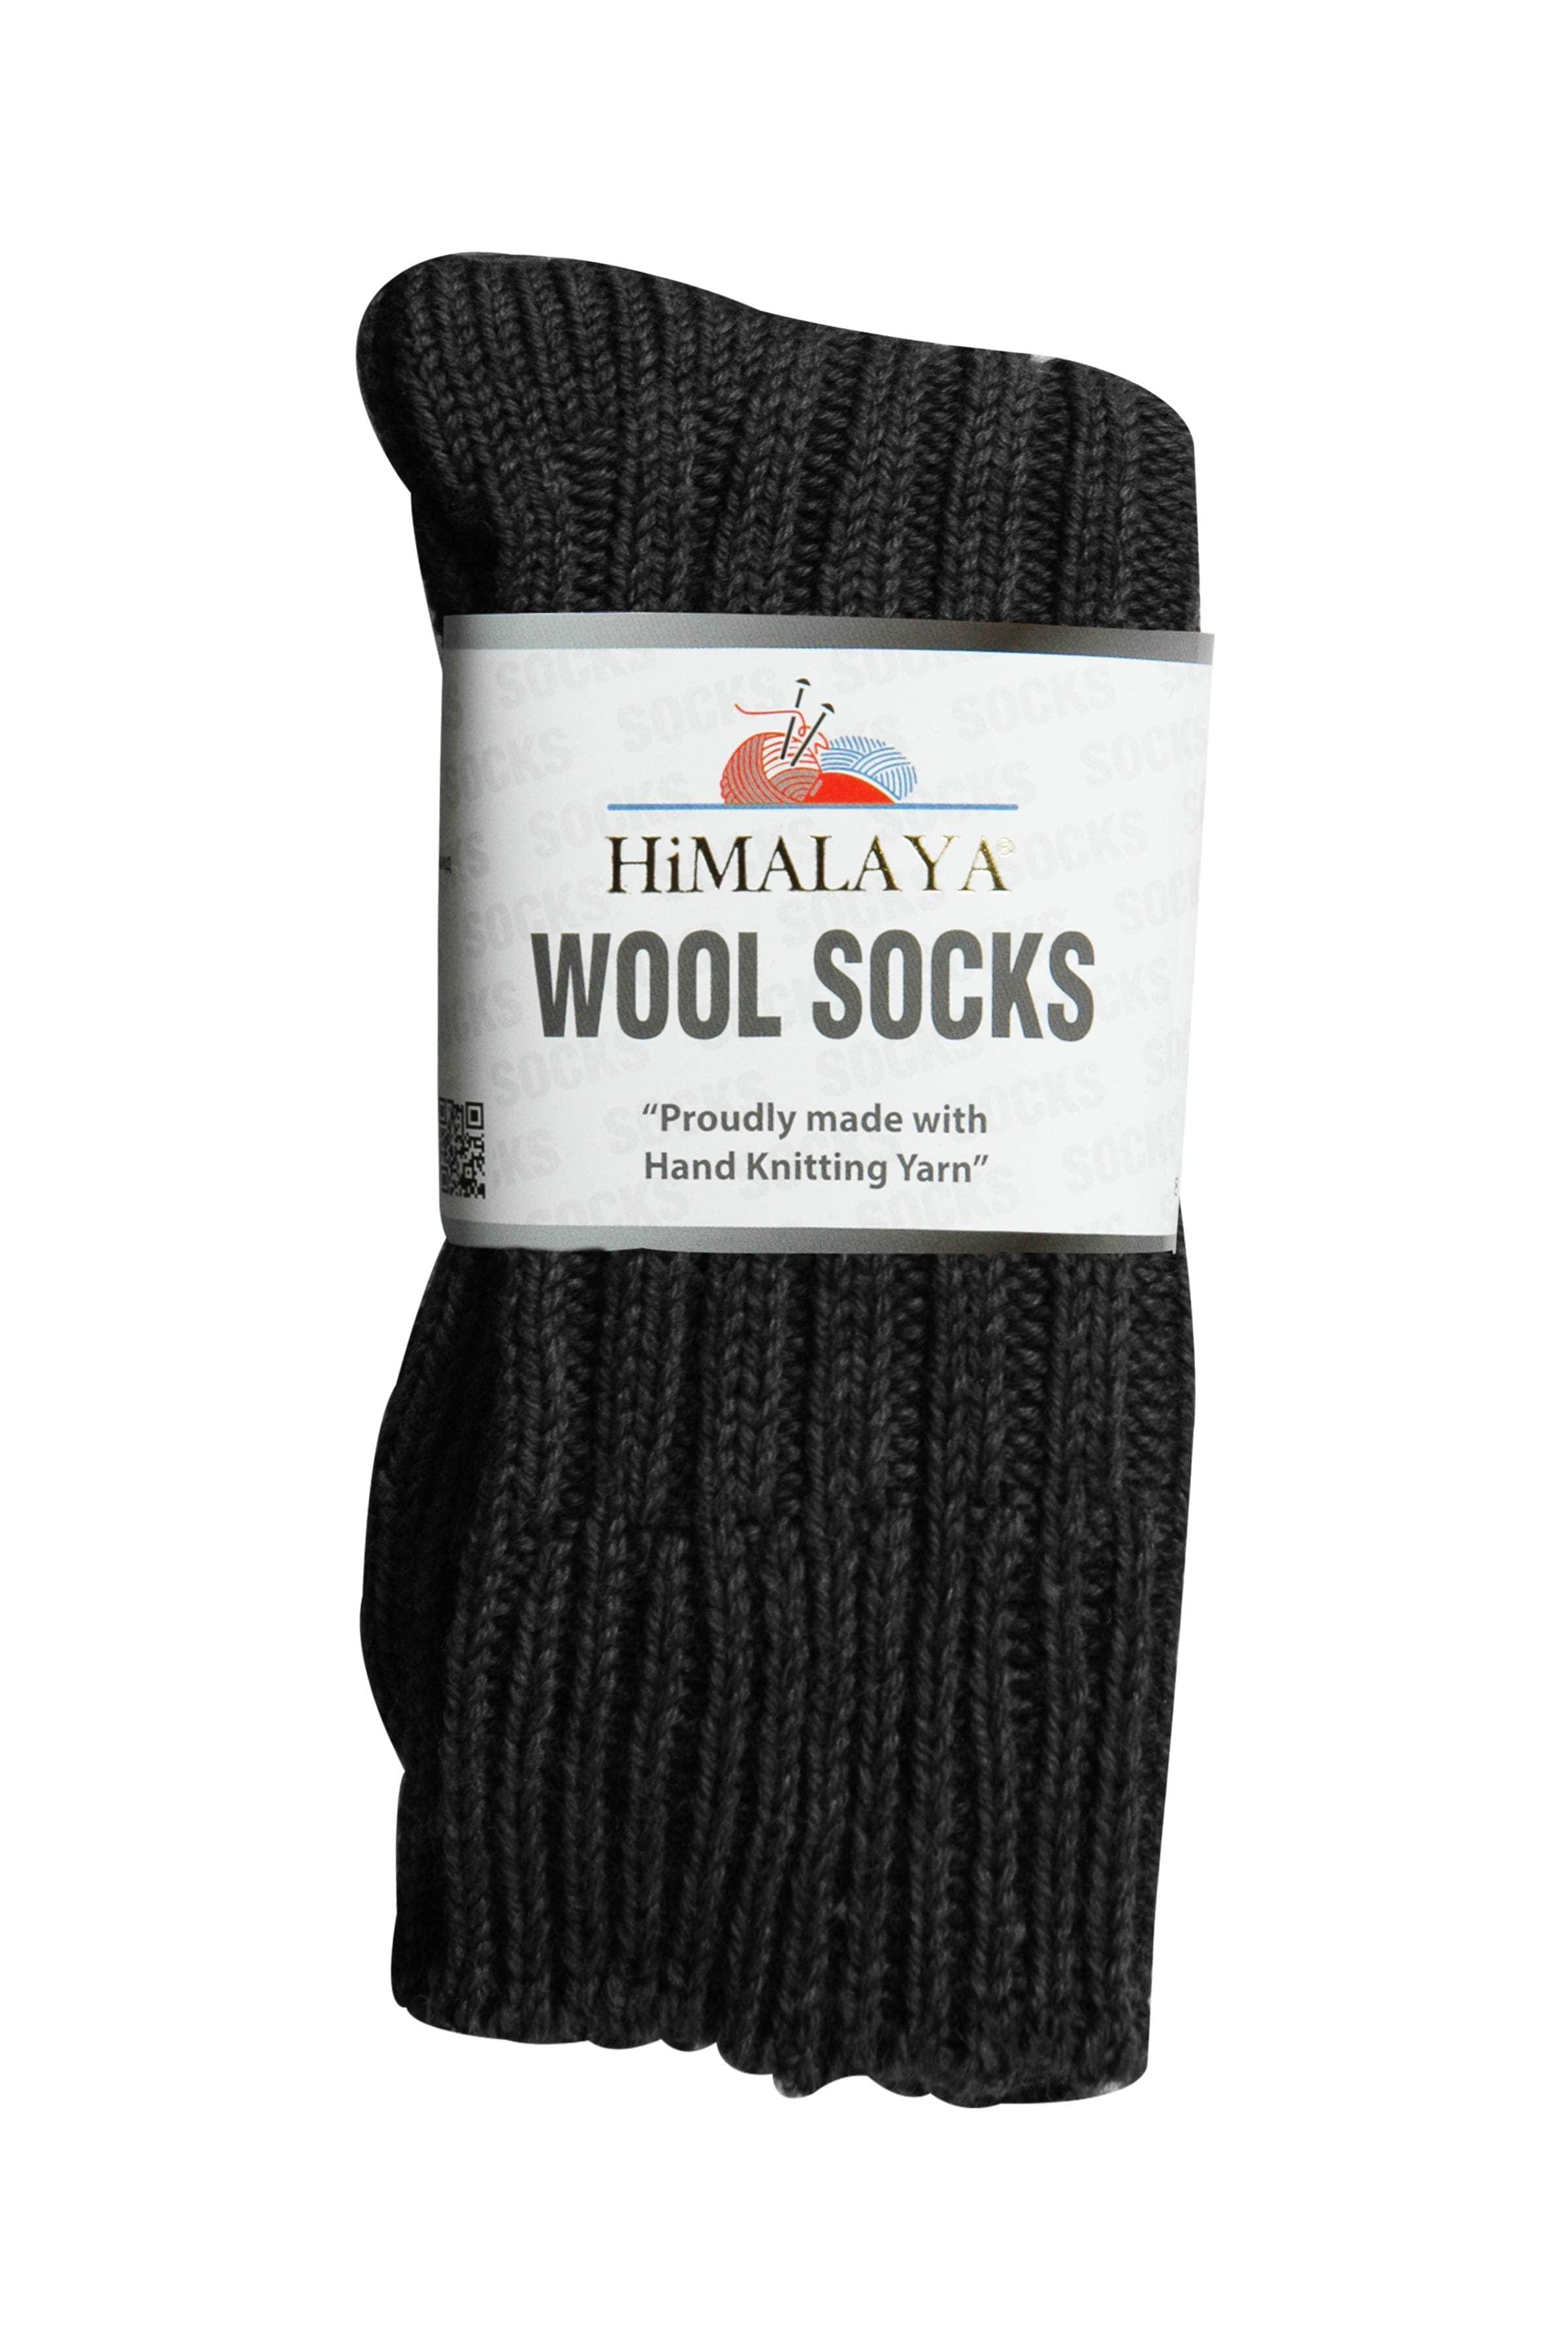 Himalaya Wool Socks